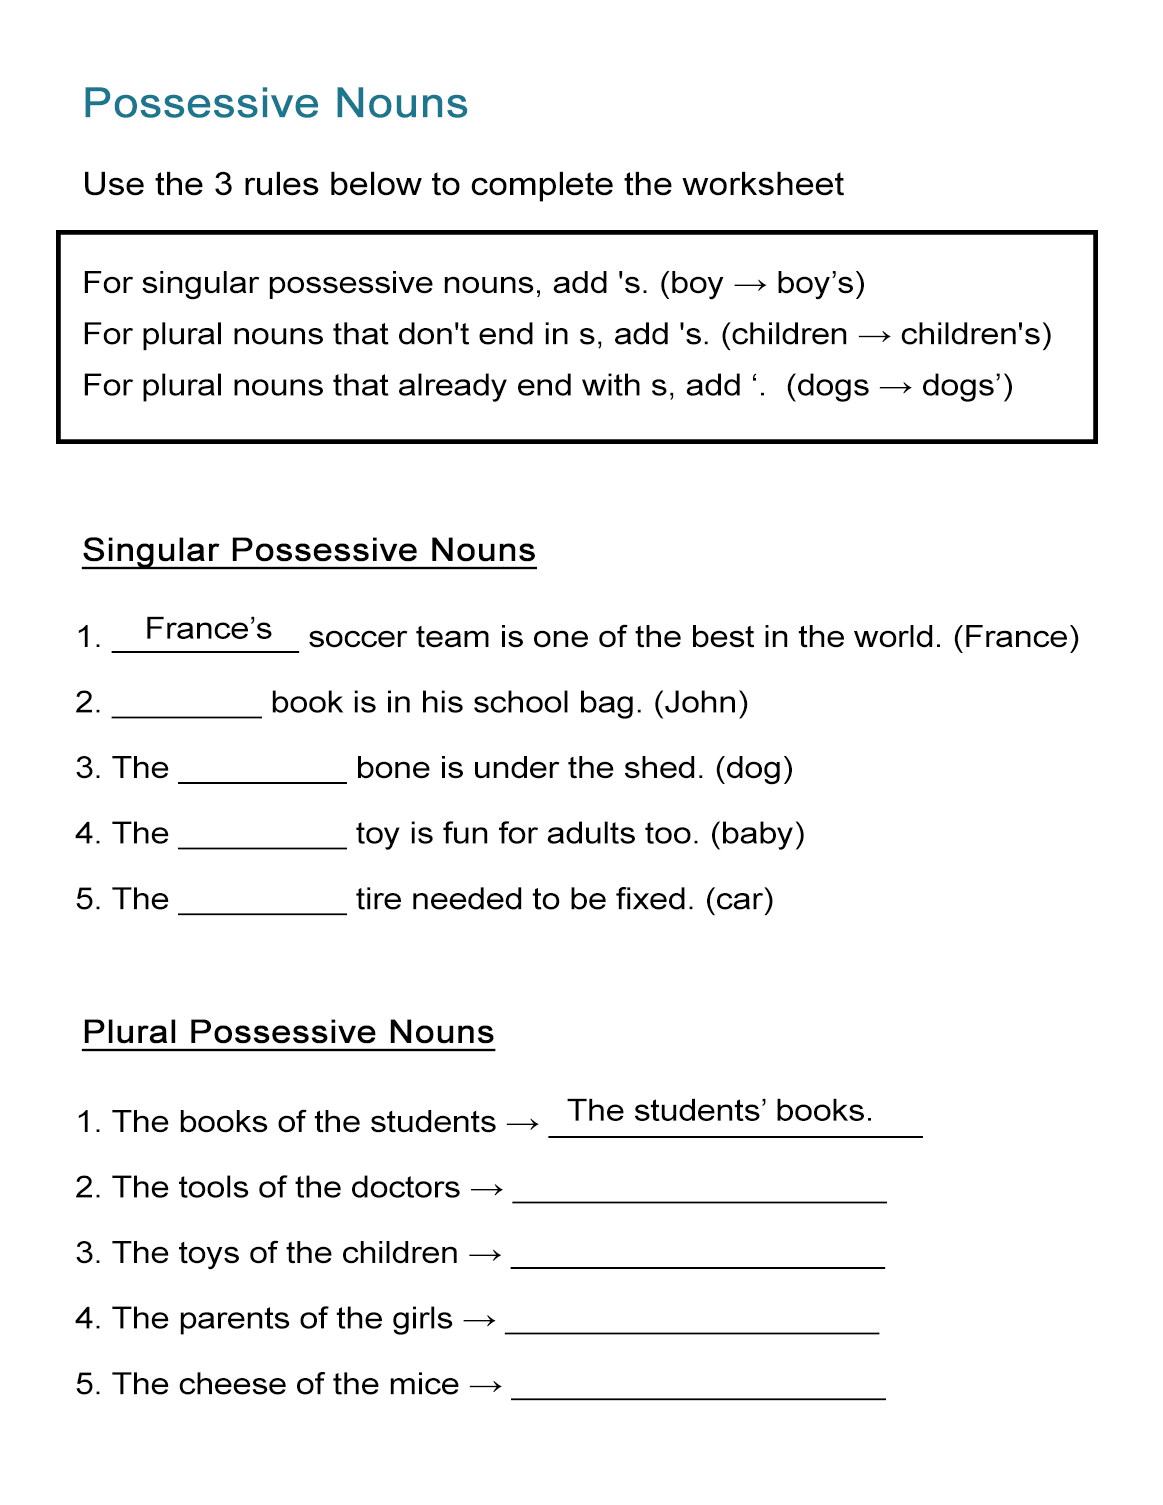 Possessive Nouns Worksheet Singular And Plural Nouns All Esl